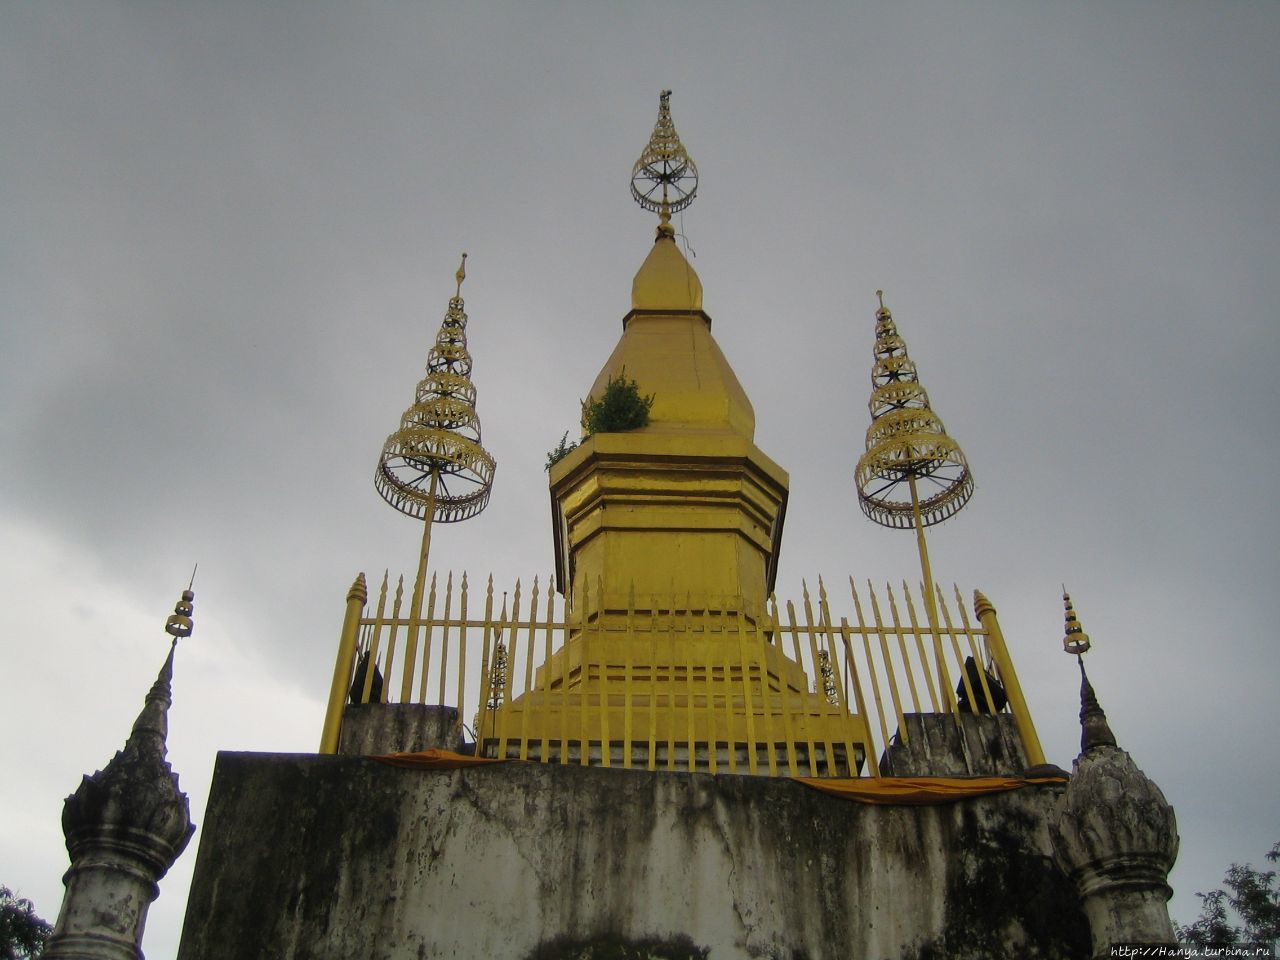 Зонтик Золотой пагоды на горе Фуси Луанг-Прабанг, Лаос